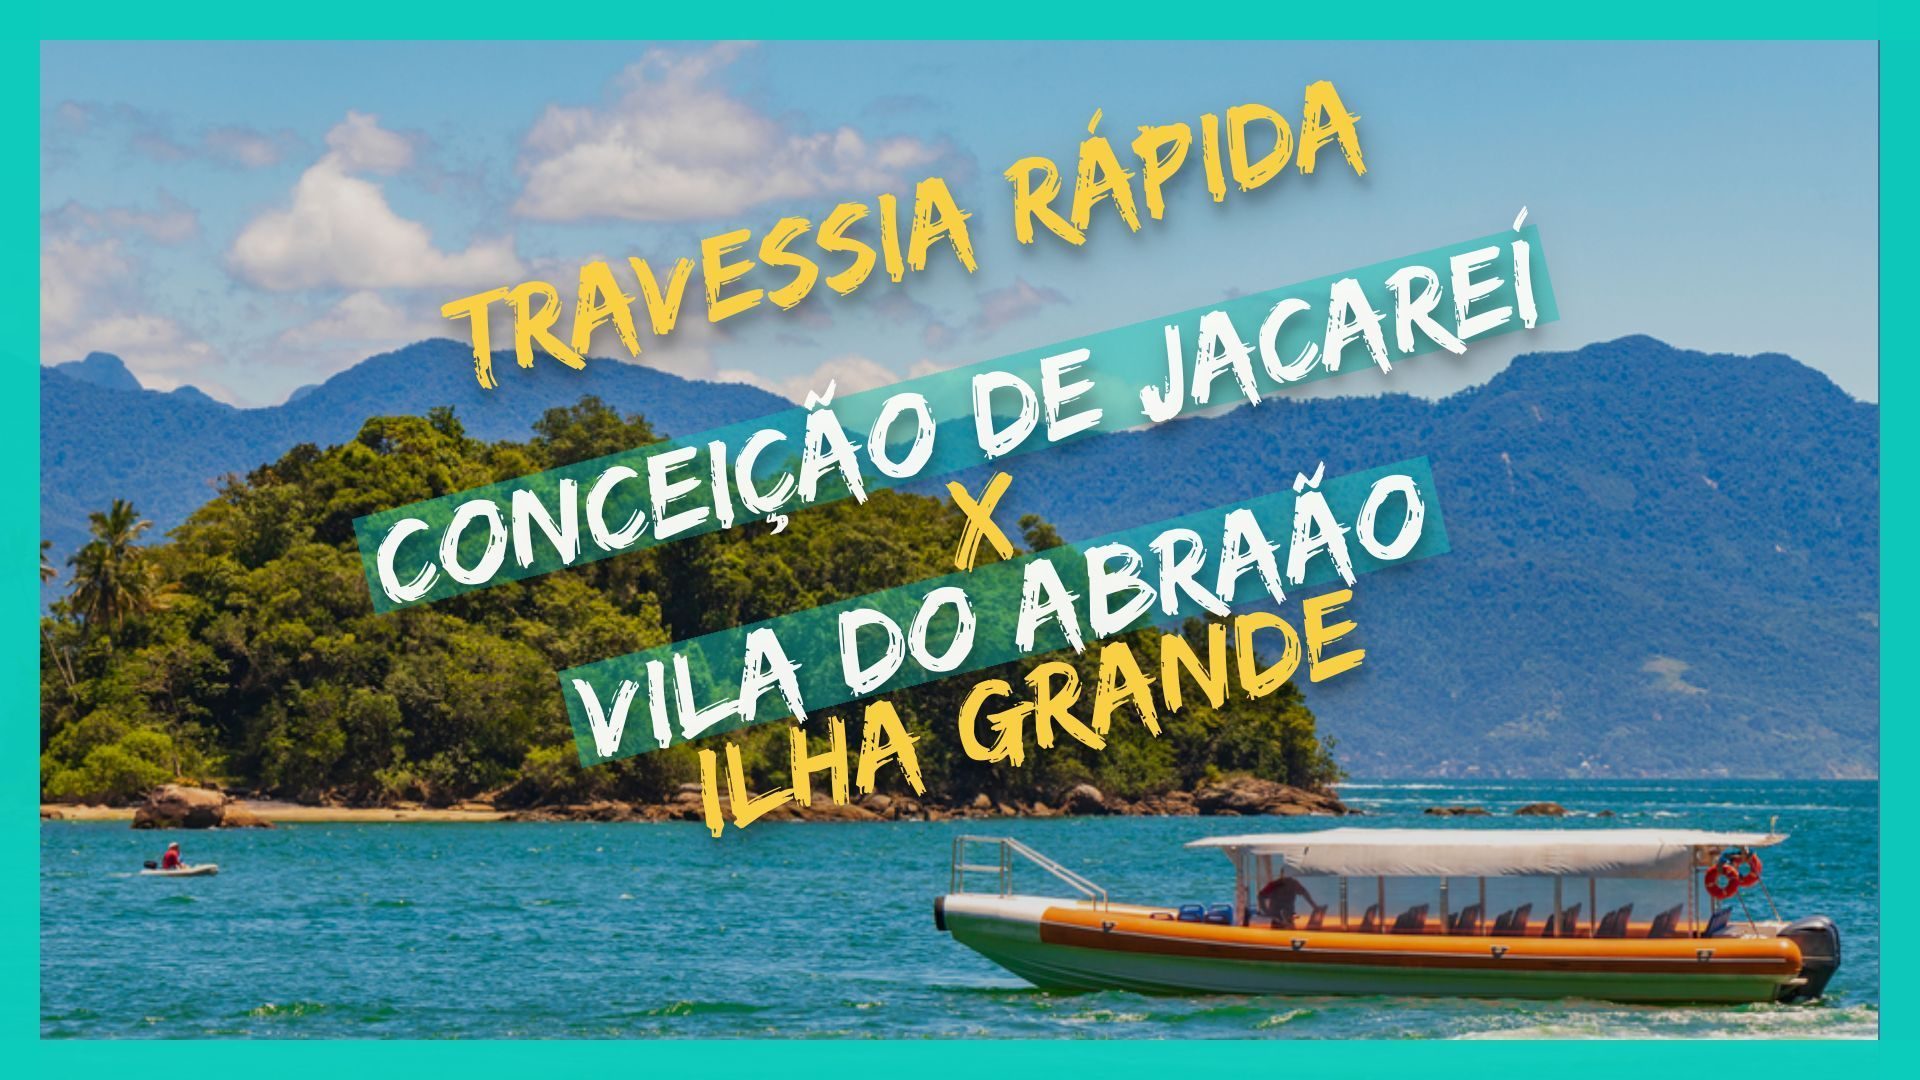 Conceição de Jacareí x Ilha Grande Travessia de barco